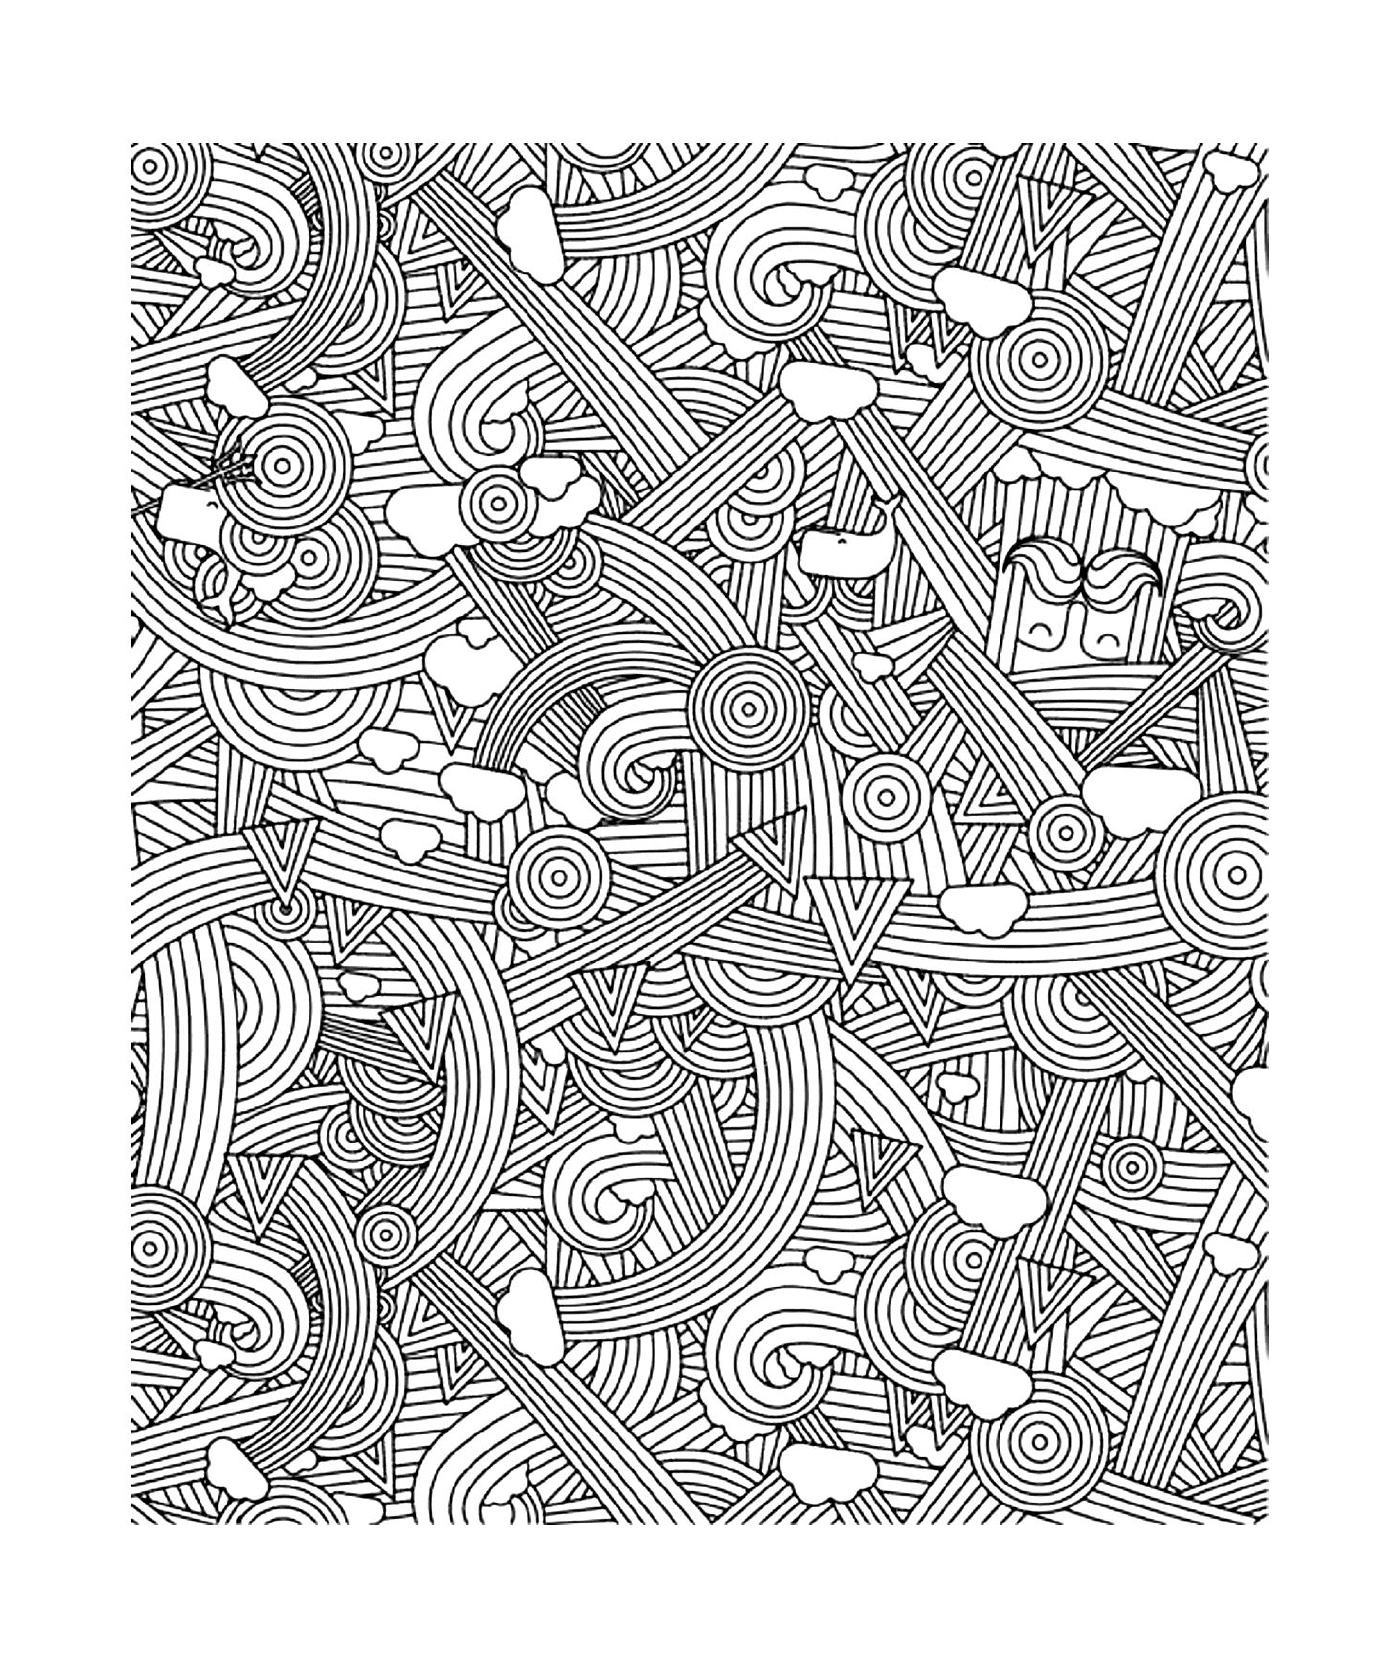  Imagem de um padrão com muitas linhas 